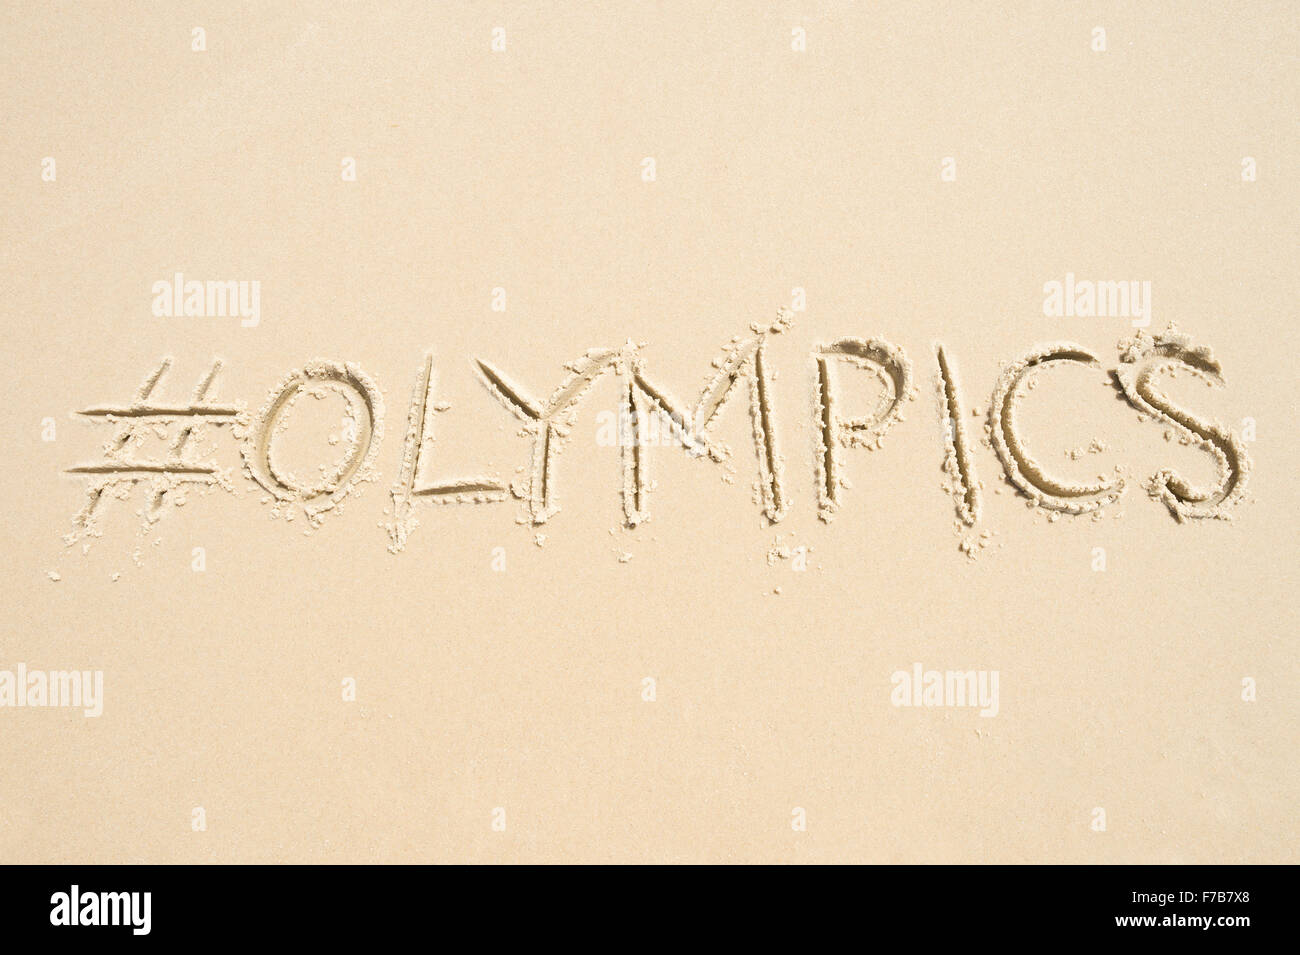 RIO DE JANEIRO, Brasilien - 10. November 2015: Handschriftliche Hashtag-social Media-Nachricht für die Olympischen Spiele im weichen Sand geschrieben. Stockfoto